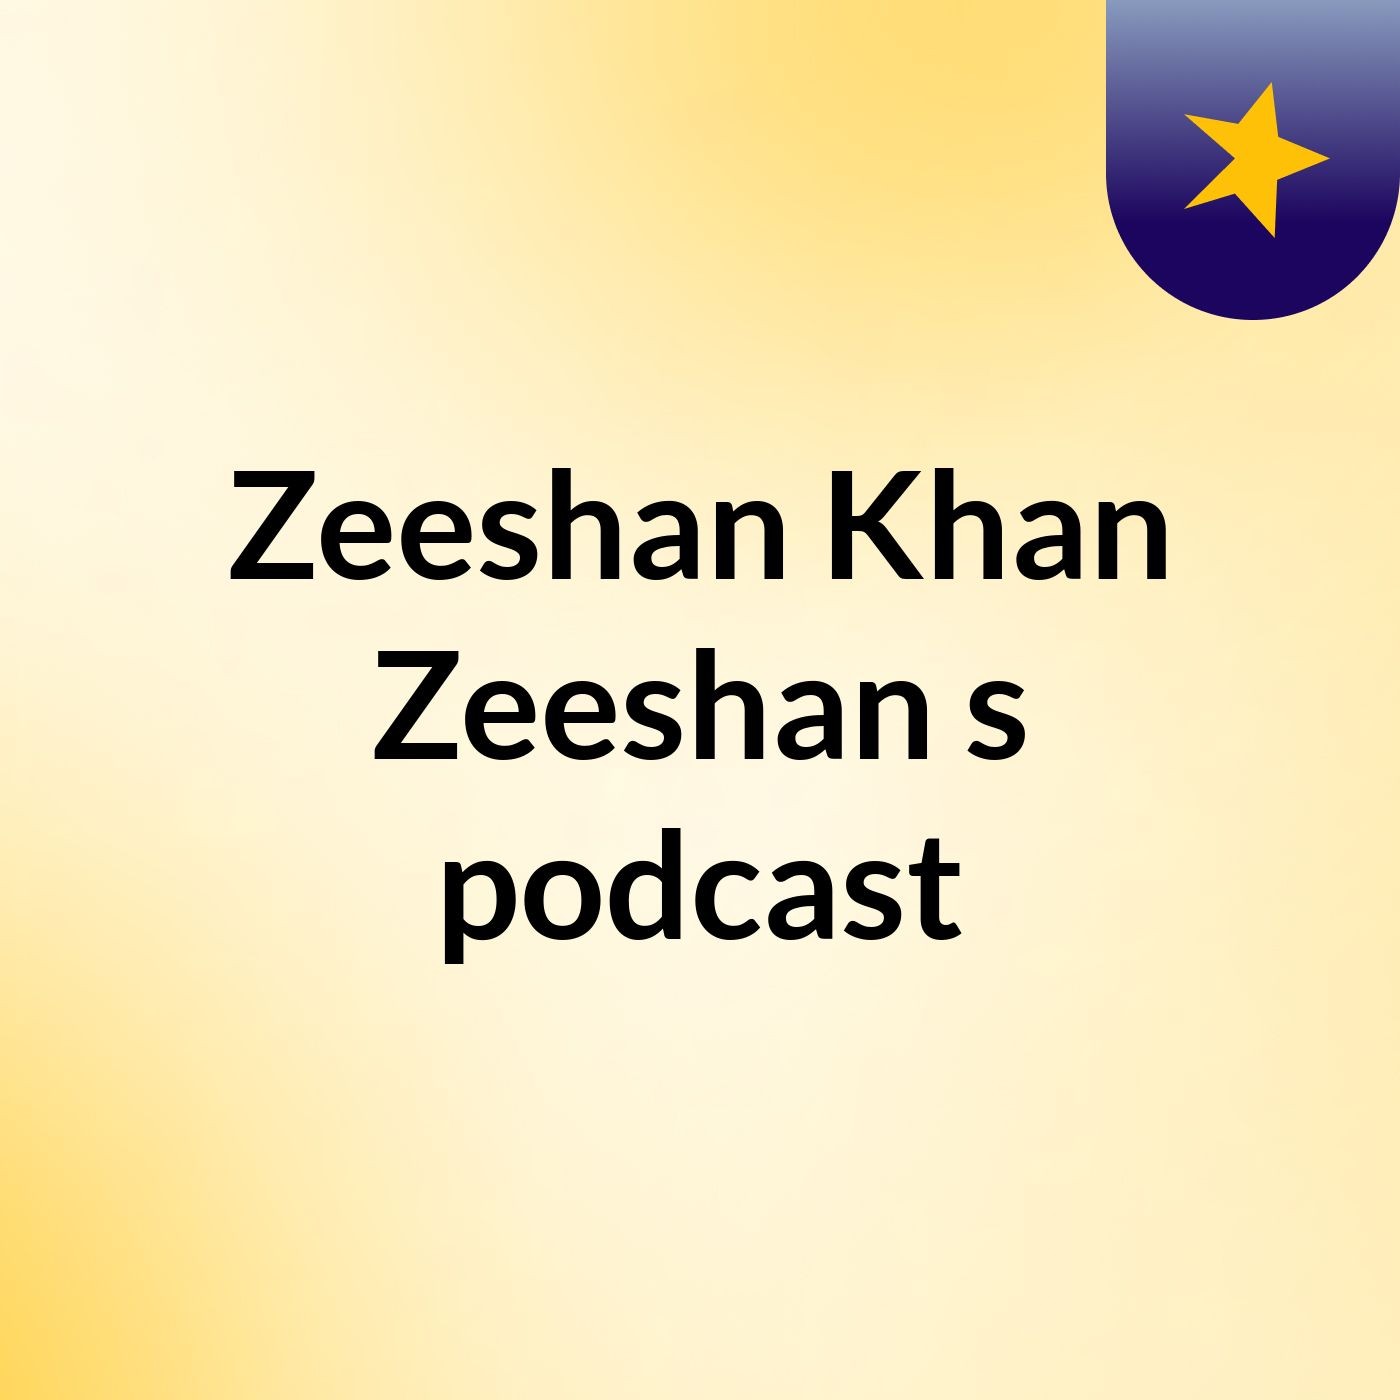 Zeeshan Khan Zeeshan's podcast